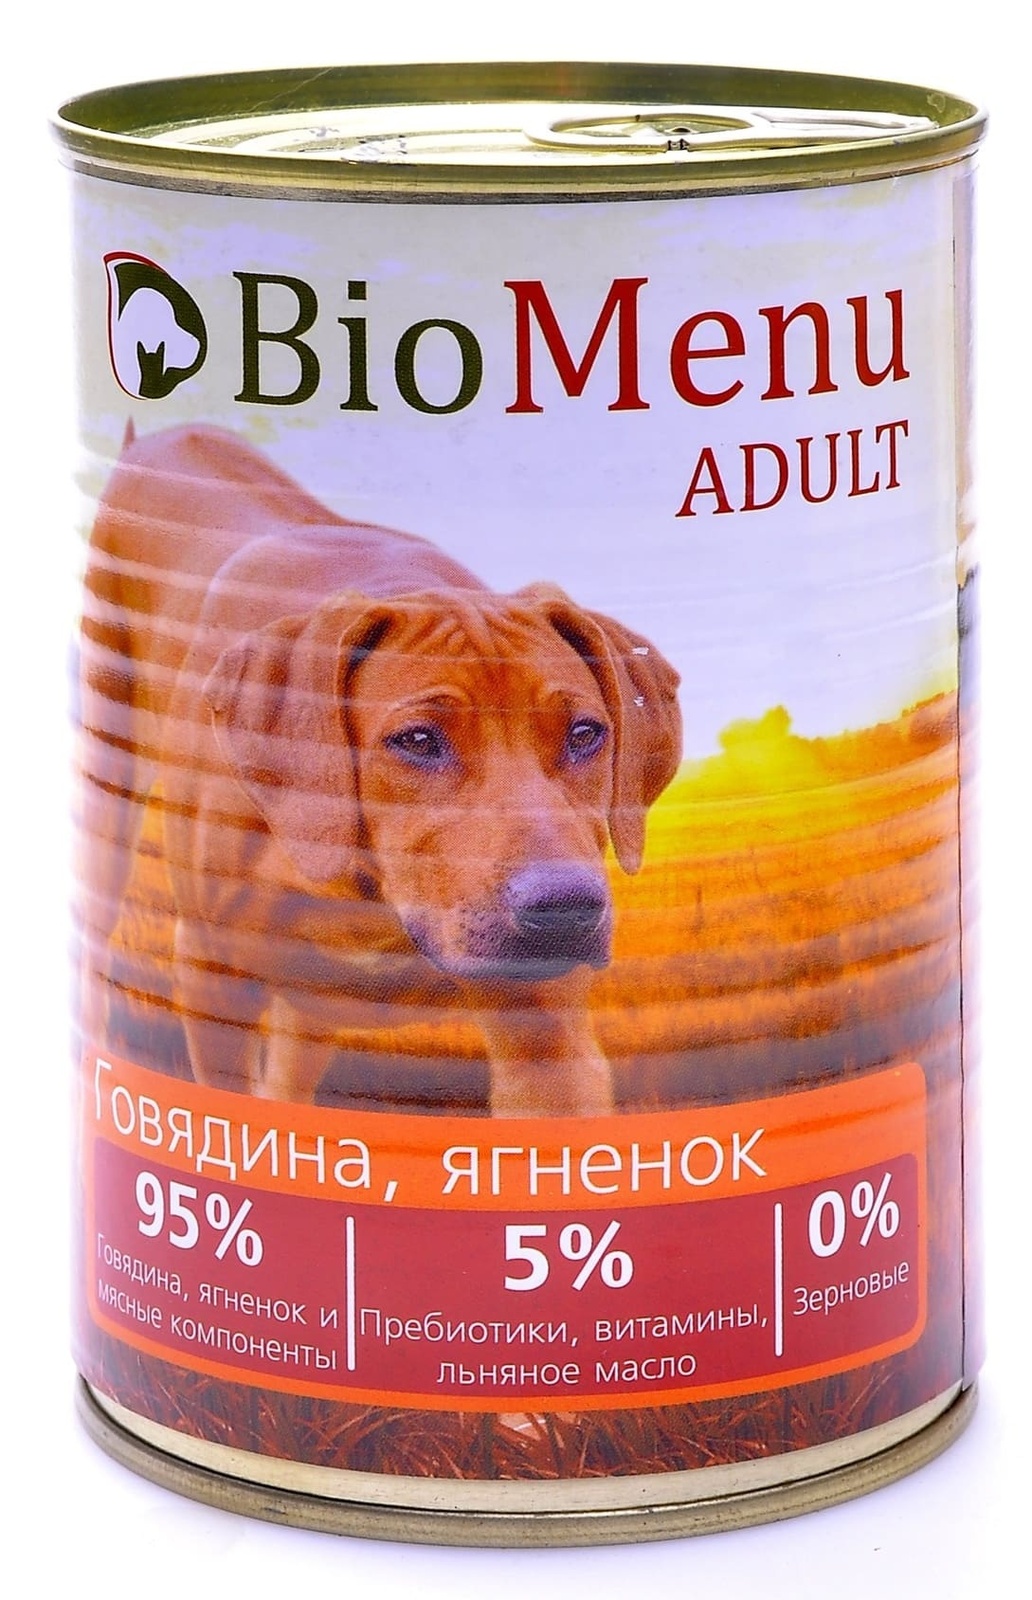 BioMenu BioMenu консервы для собак говядина и ягненок (100 г) консервы biomenu adult для собак говядина ягненок 95% мясо 410гр